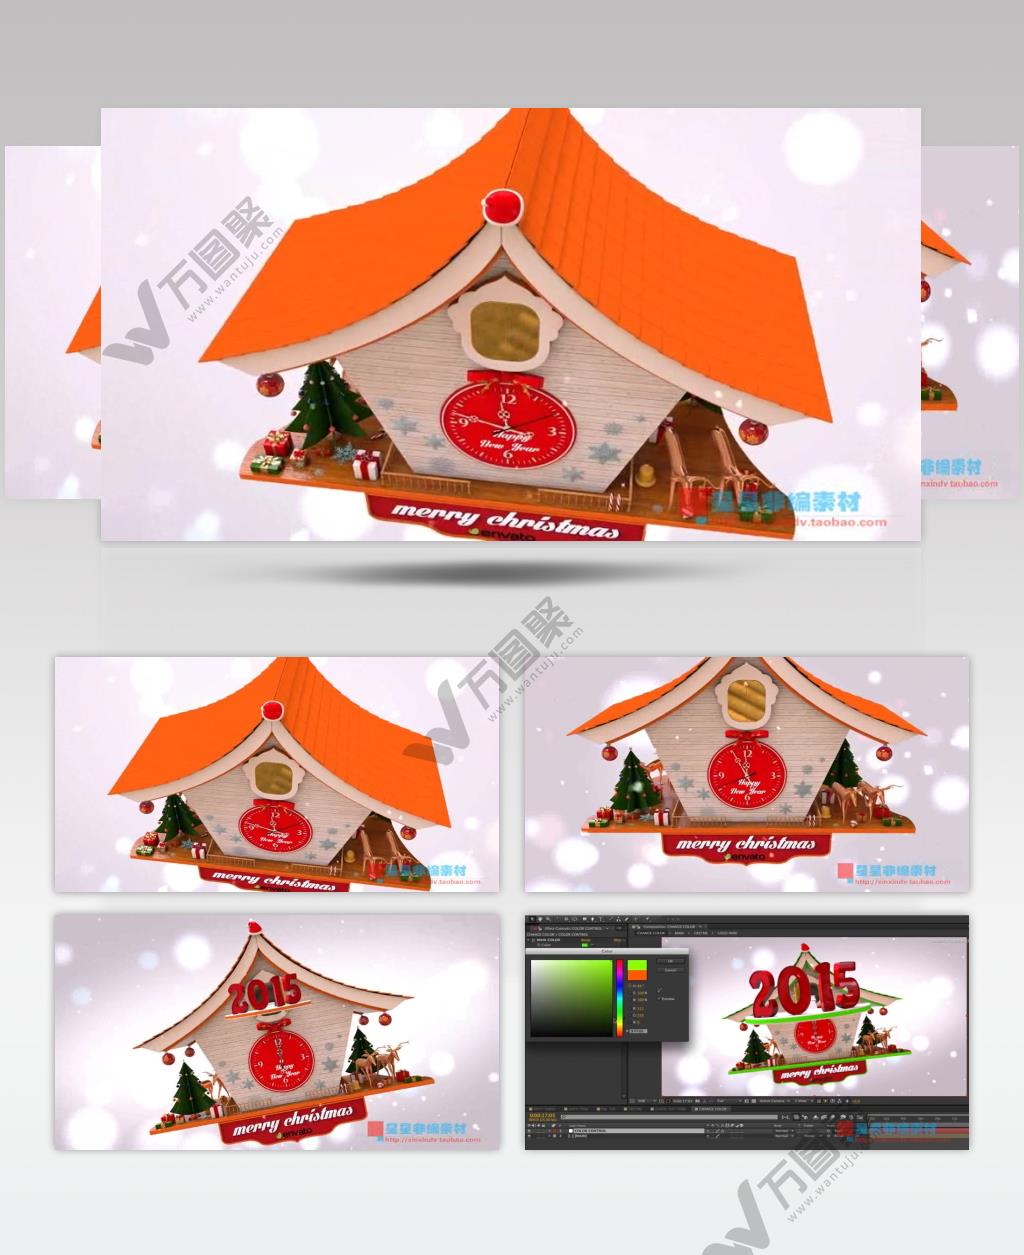 AE：圣诞2015时钟 AE模板素材下载15 圣诞节ae模版